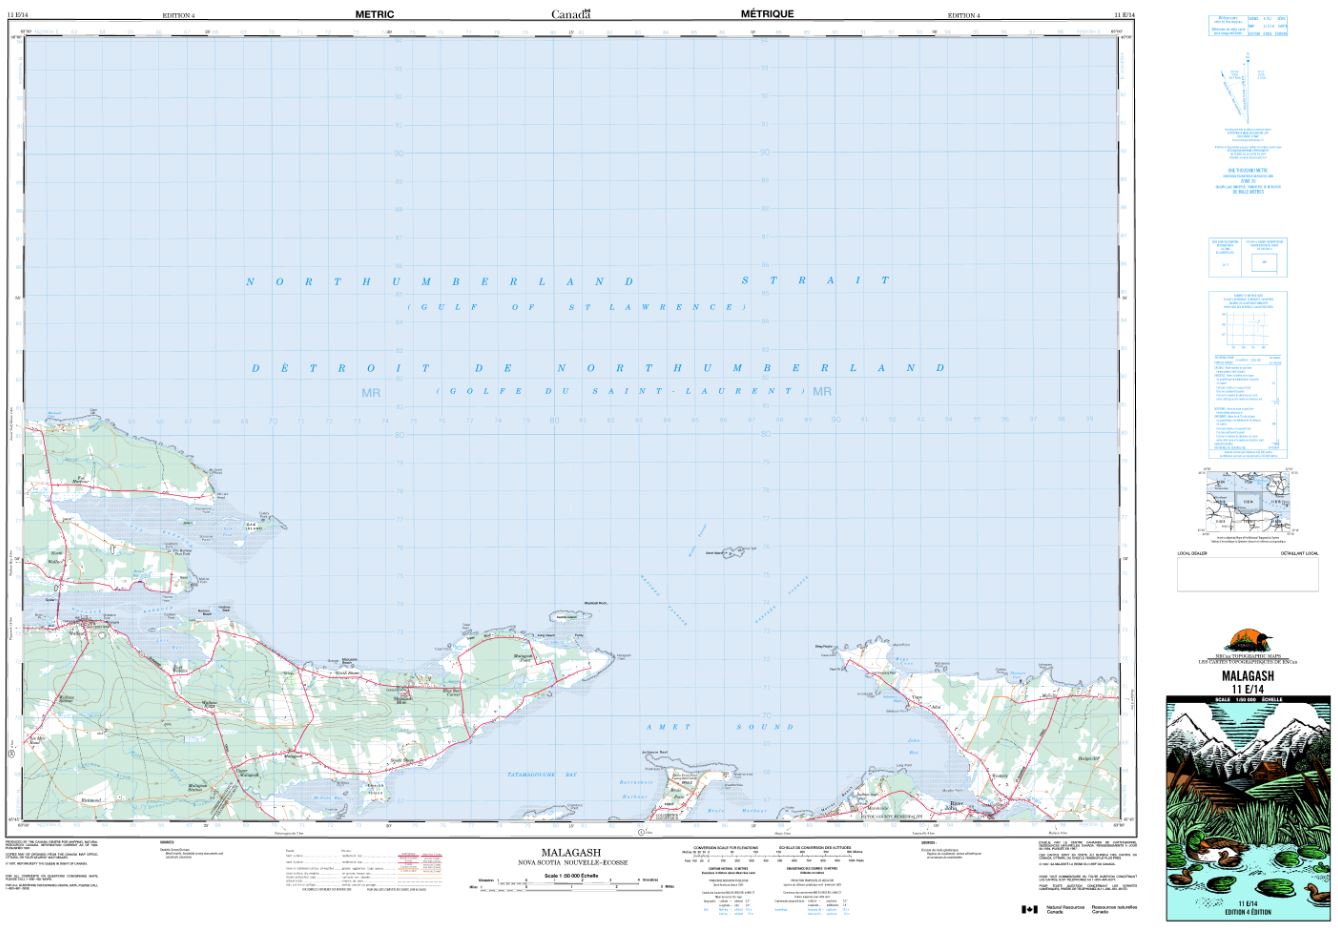 11E/14 Malagash Topographic Map Nova Scotia